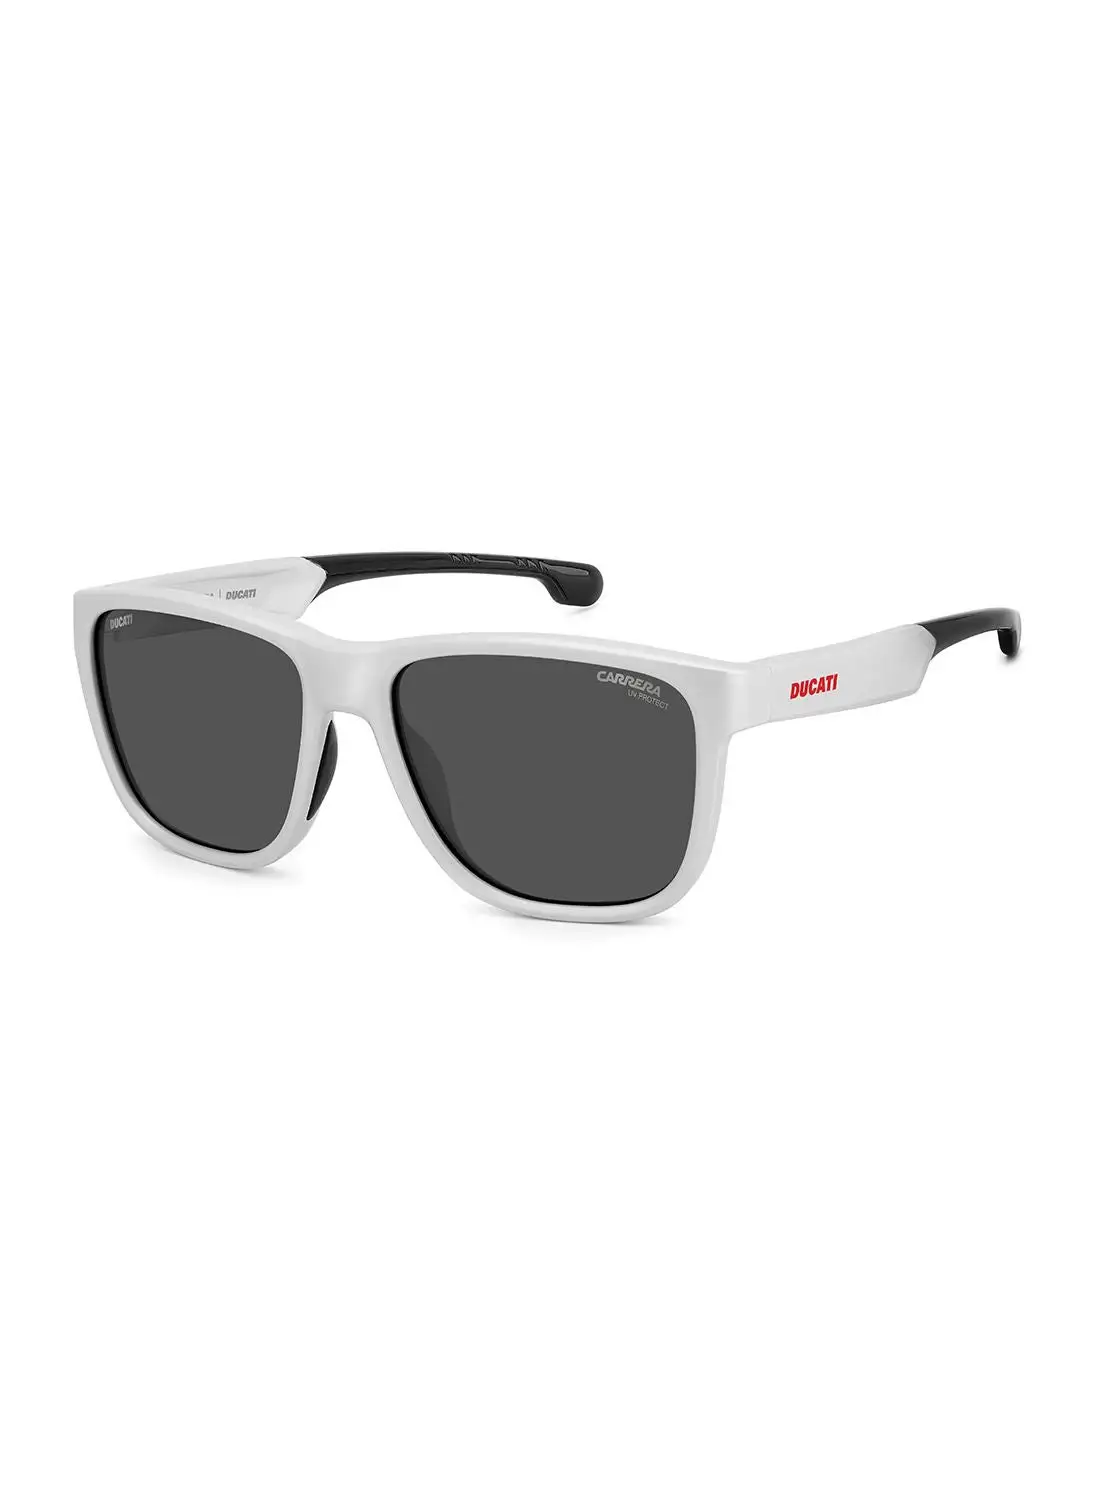 نظارة كاريرا الشمسية المربعة للرجال للحماية من الأشعة فوق البنفسجية - Carduc 003/S أبيض مطفي 57 - مقاس العدسة: 57 ملم